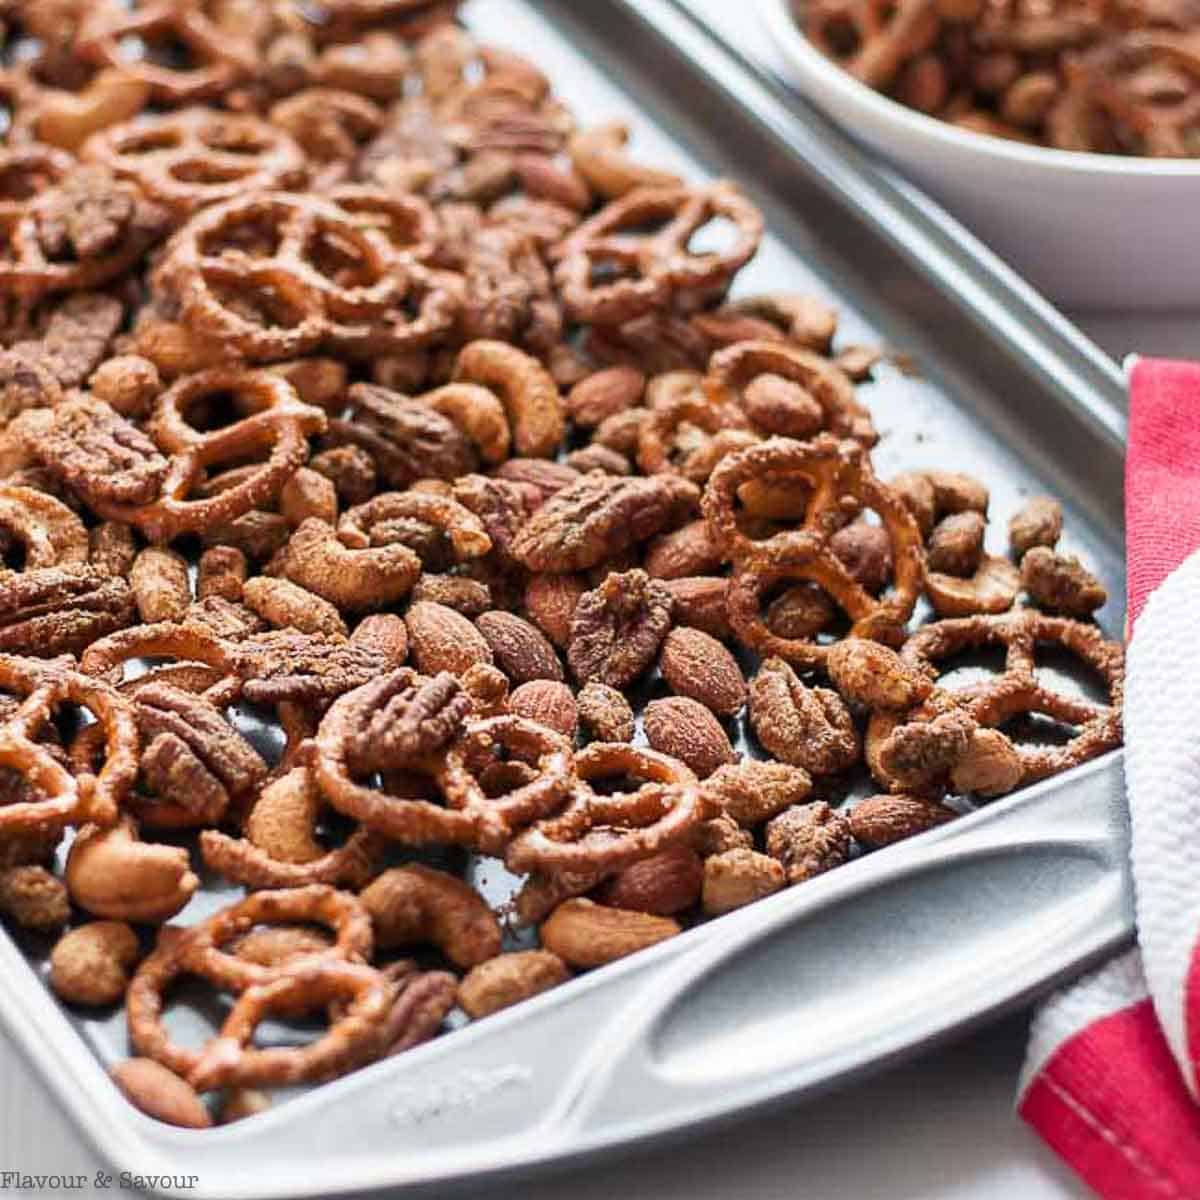 bowl of pretzels